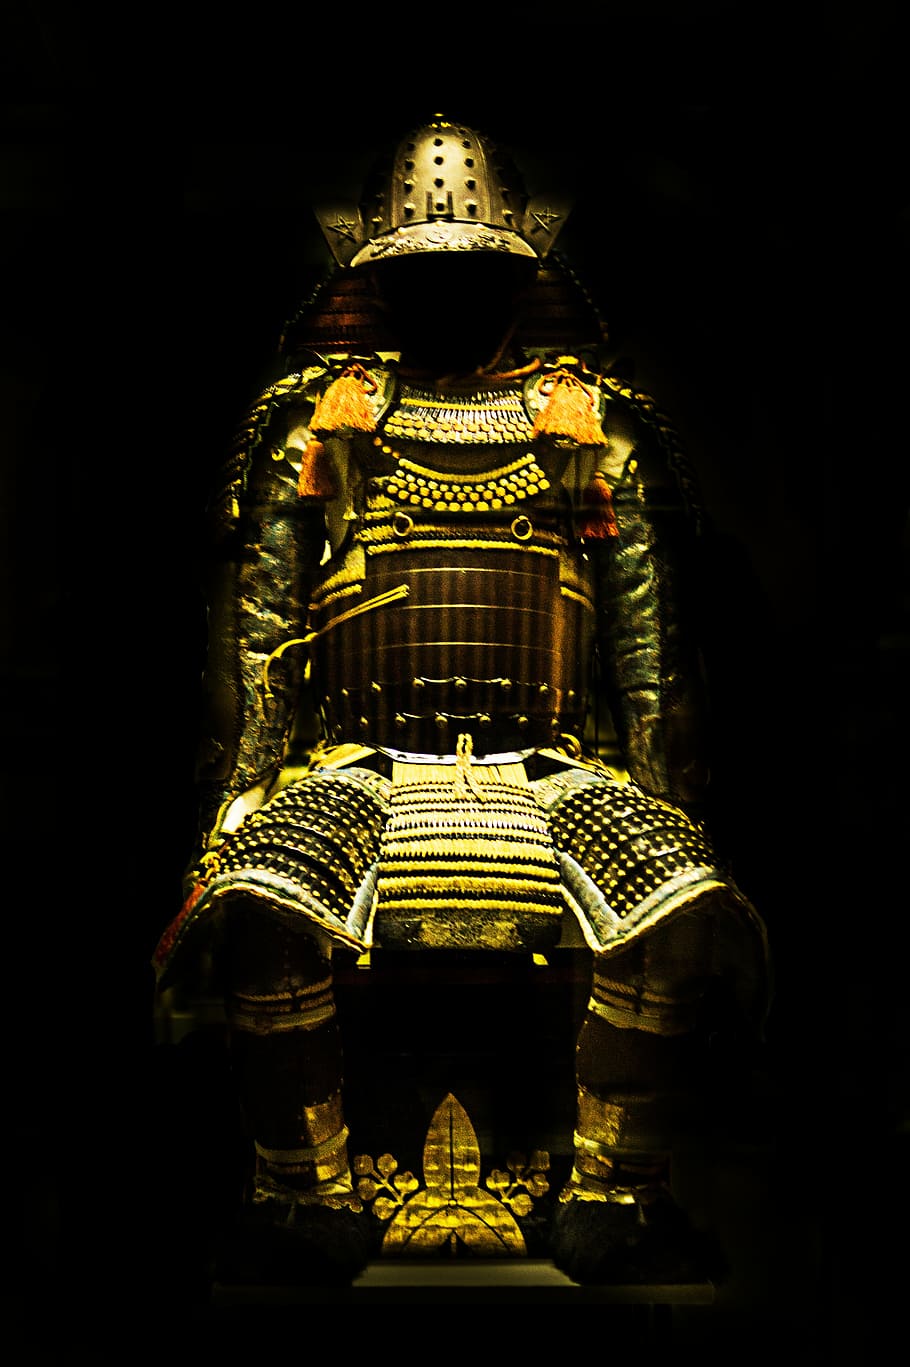 armadura de samurai amarelo, otomano, ouro, estátua, armadura, cor de ouro, ninguém, dentro de casa, arquitetura, fundo preto